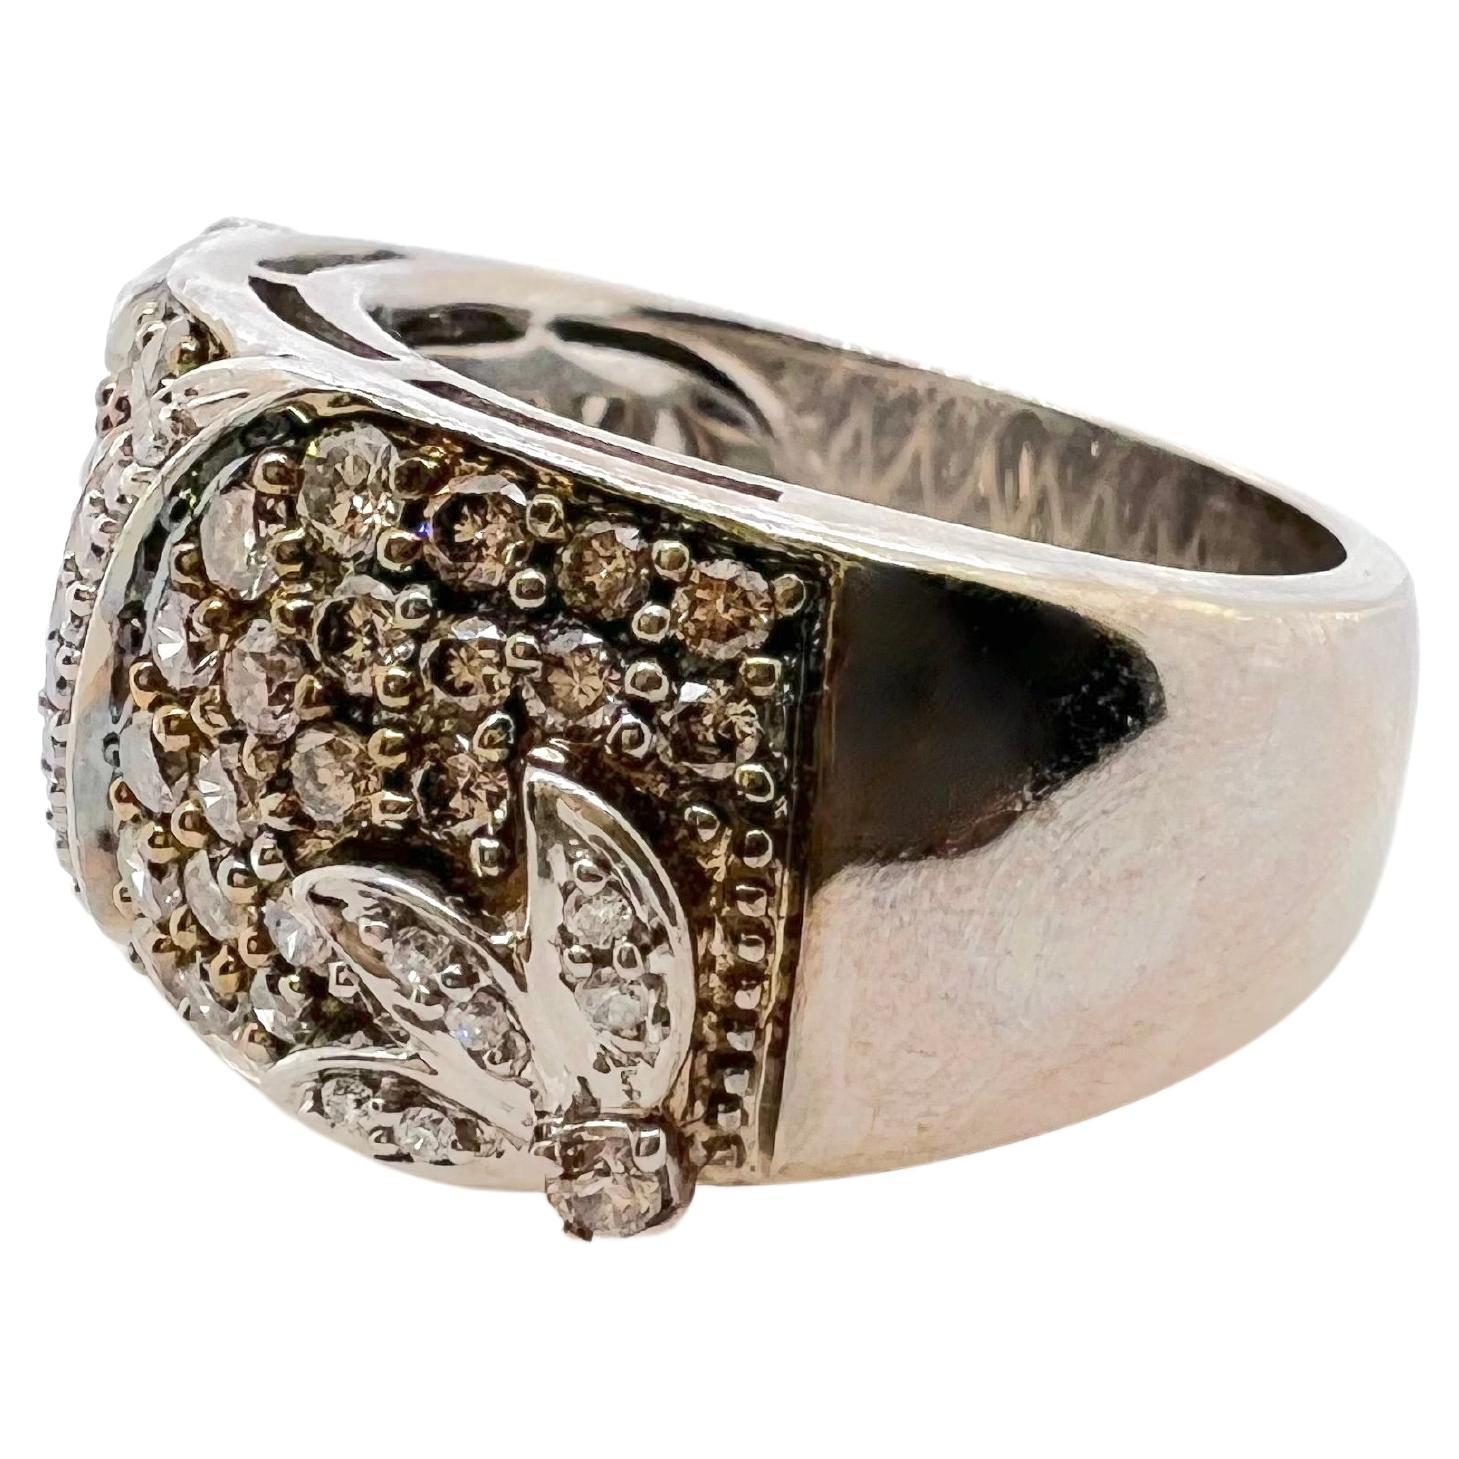 Ce magnifique bracelet en diamants de couleur champagne est serti dans une monture en or blanc 14k !  Cette bague attire le regard avec un petit nombre de diamants blancs pour contraster avec les diamants de couleur.  Il peut être porté de manière